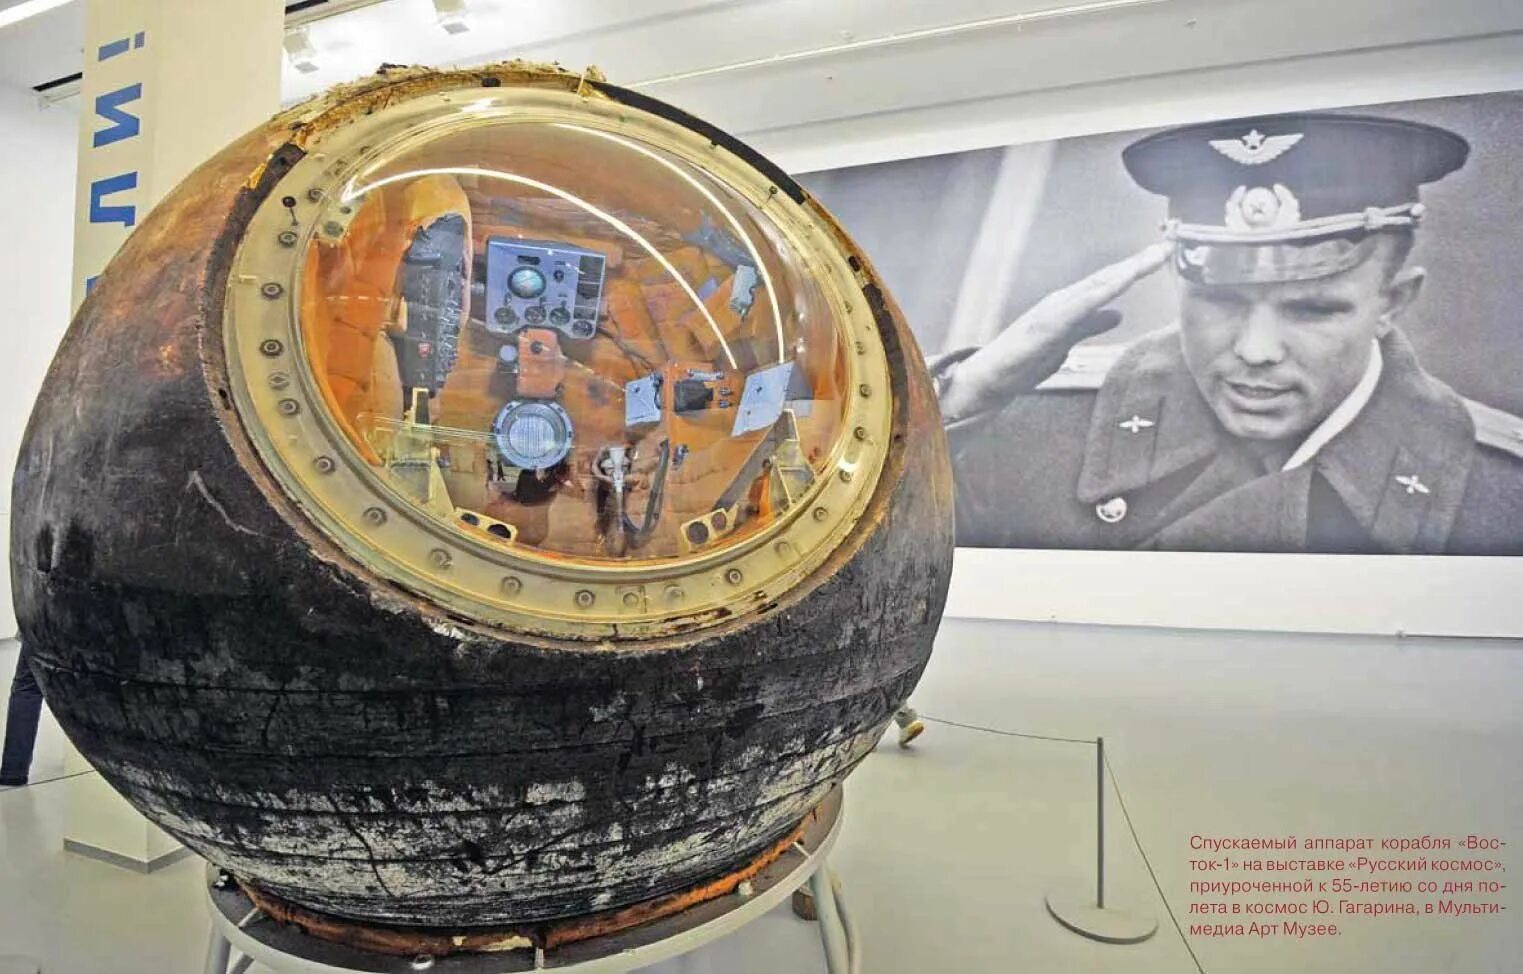 Как назывался первый космический корабль гагарина. Космический аппарат Гагарина Восток-1. Космический корабль Восток 1 Юрия Гагарина. Спускаемый аппарат корабля «Восток-1». Гагарин спускаемый аппарат Восток 1.